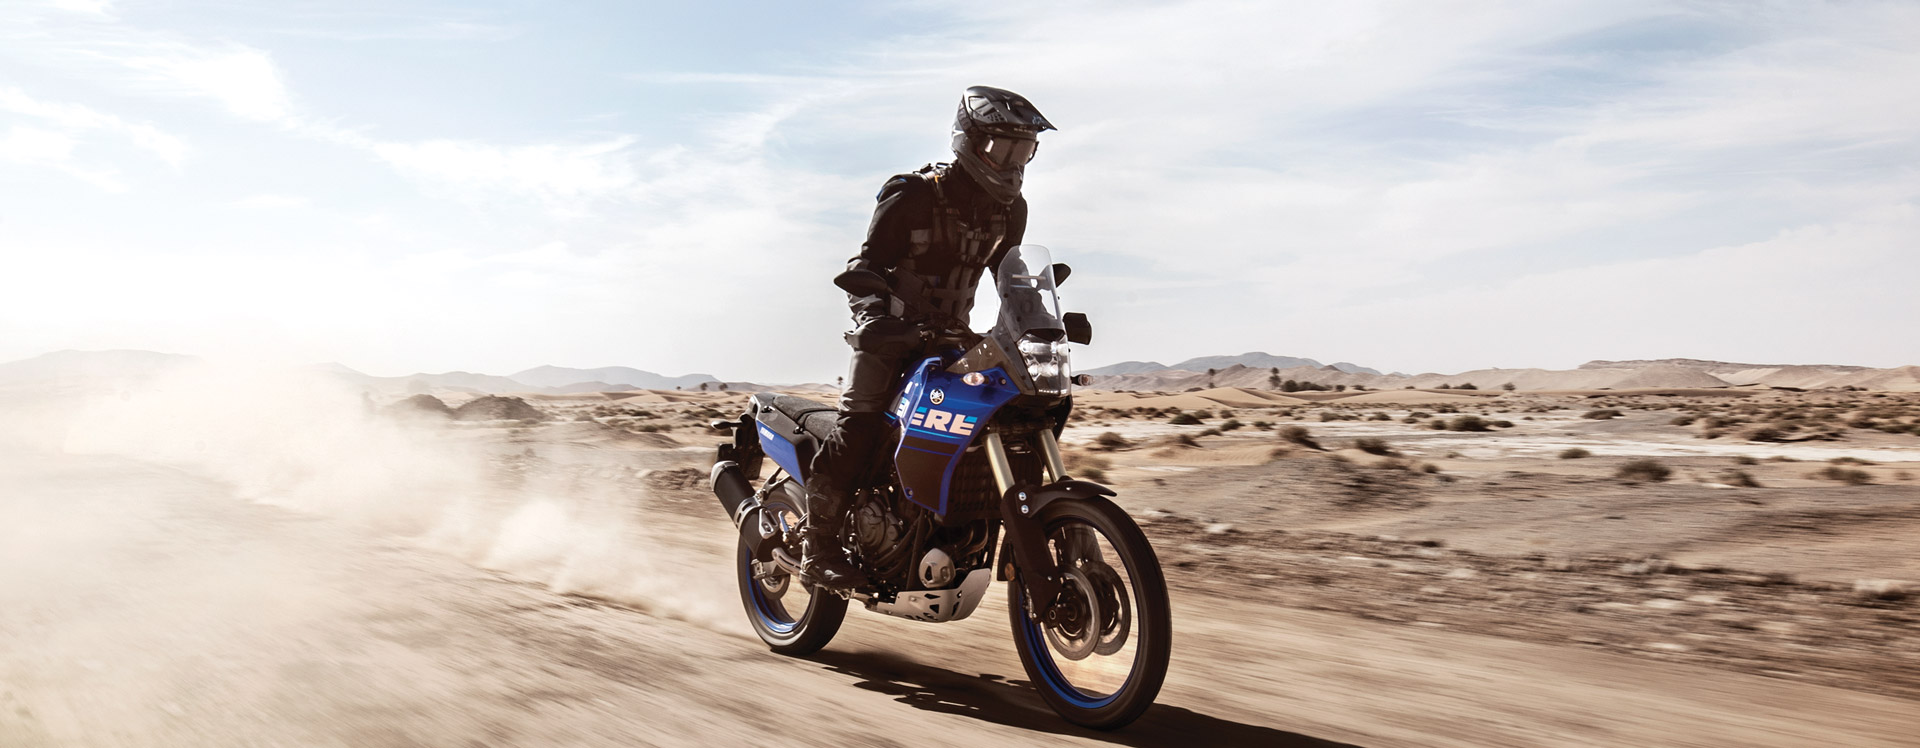 2022 Yamaha Ténéré 700 Adventure Touring Motorcycle